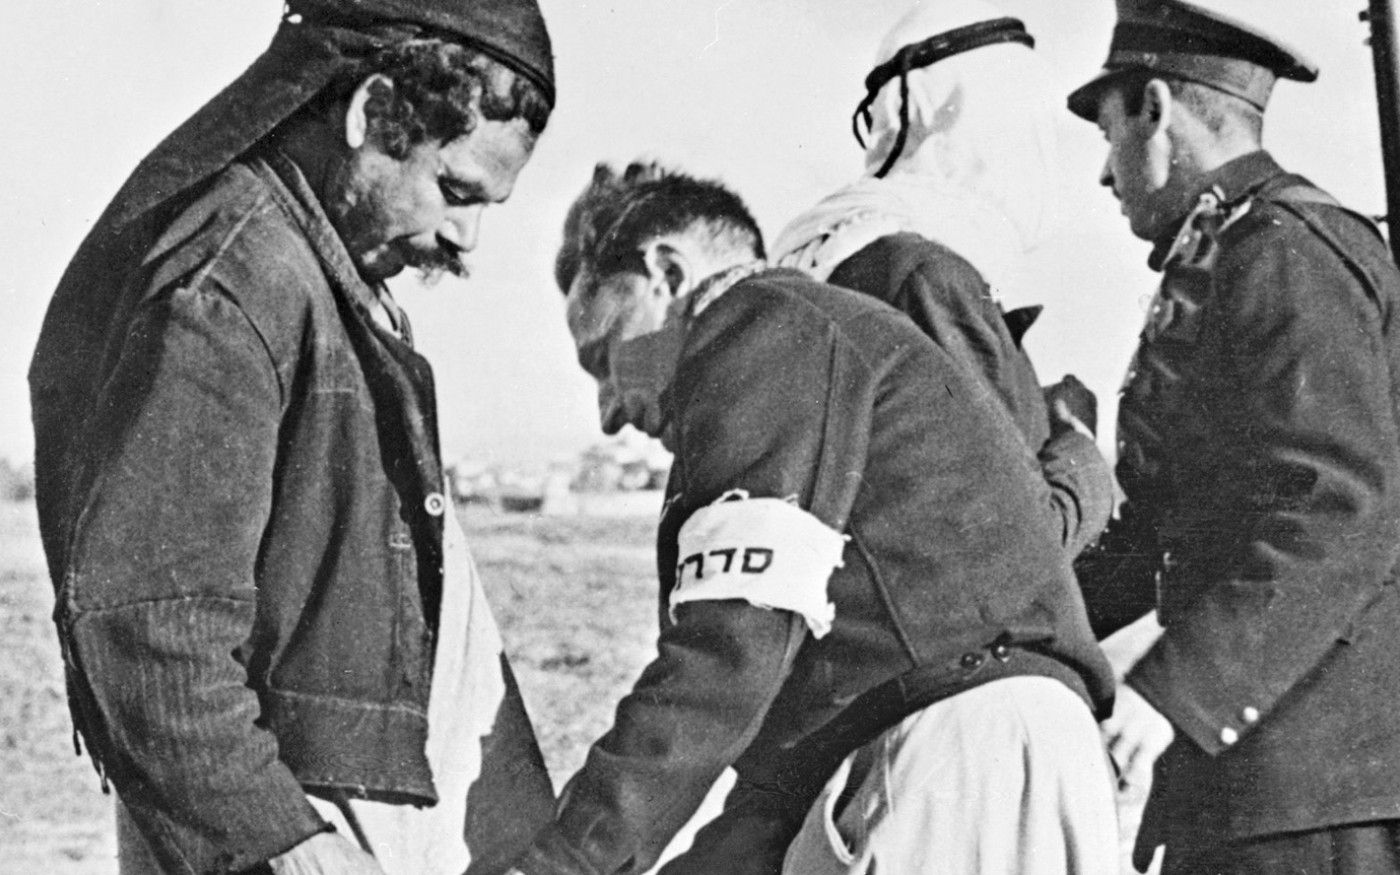 Des membres de la Haganah fouillent deux Palestiniens à la porte de Tel Aviv, le 20 janvier 1948 (AFP)